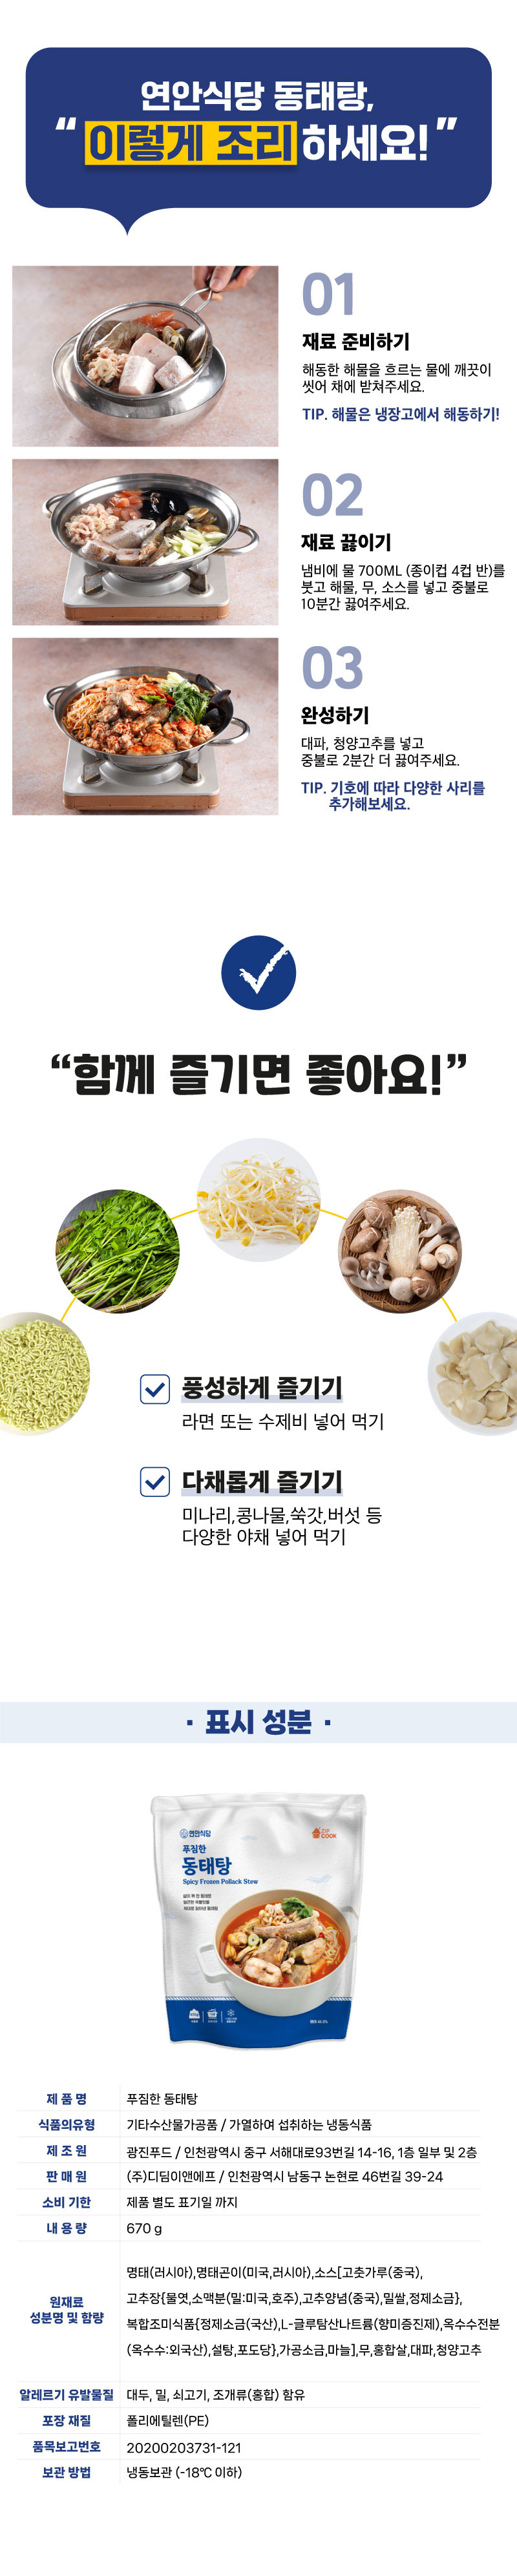 연안식당 푸짐한 동태탕3